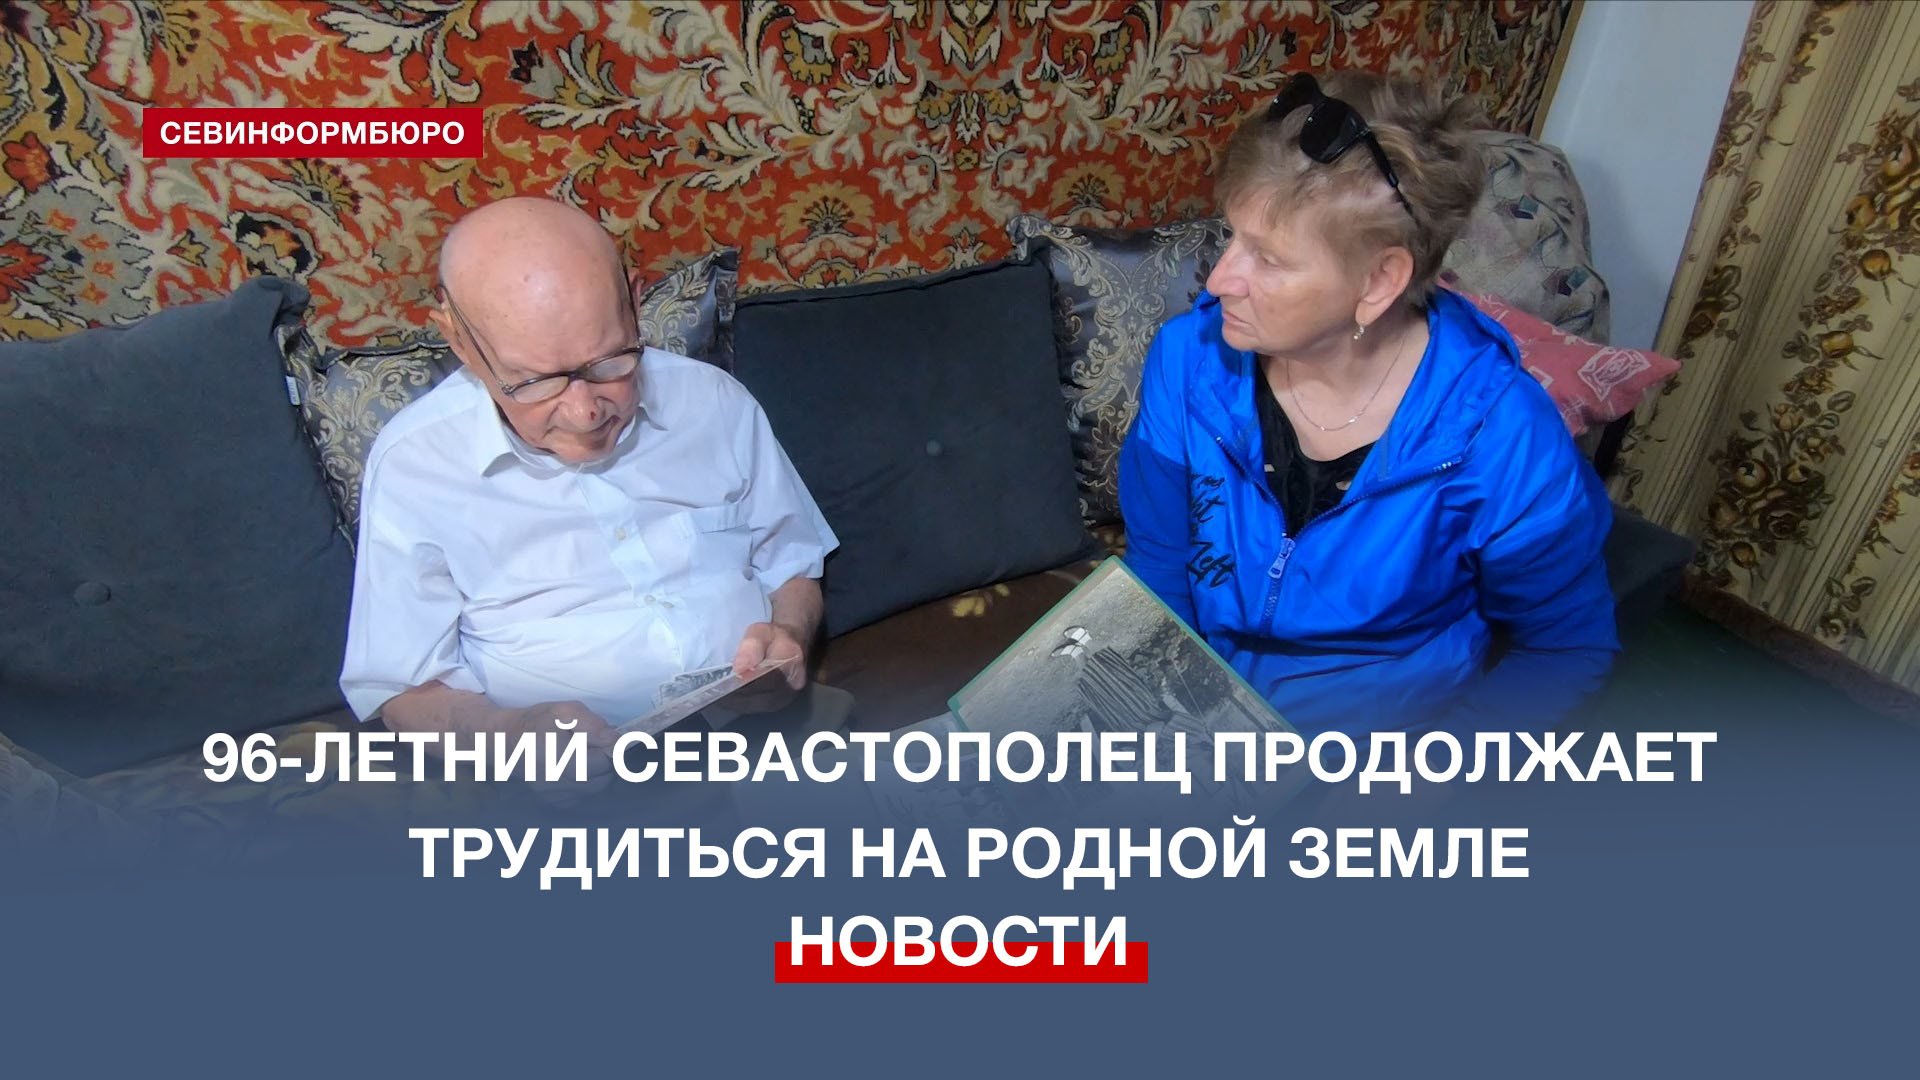 Прошедший оккупацию 96-летний житель Андреевки продолжает трудиться на родной земле